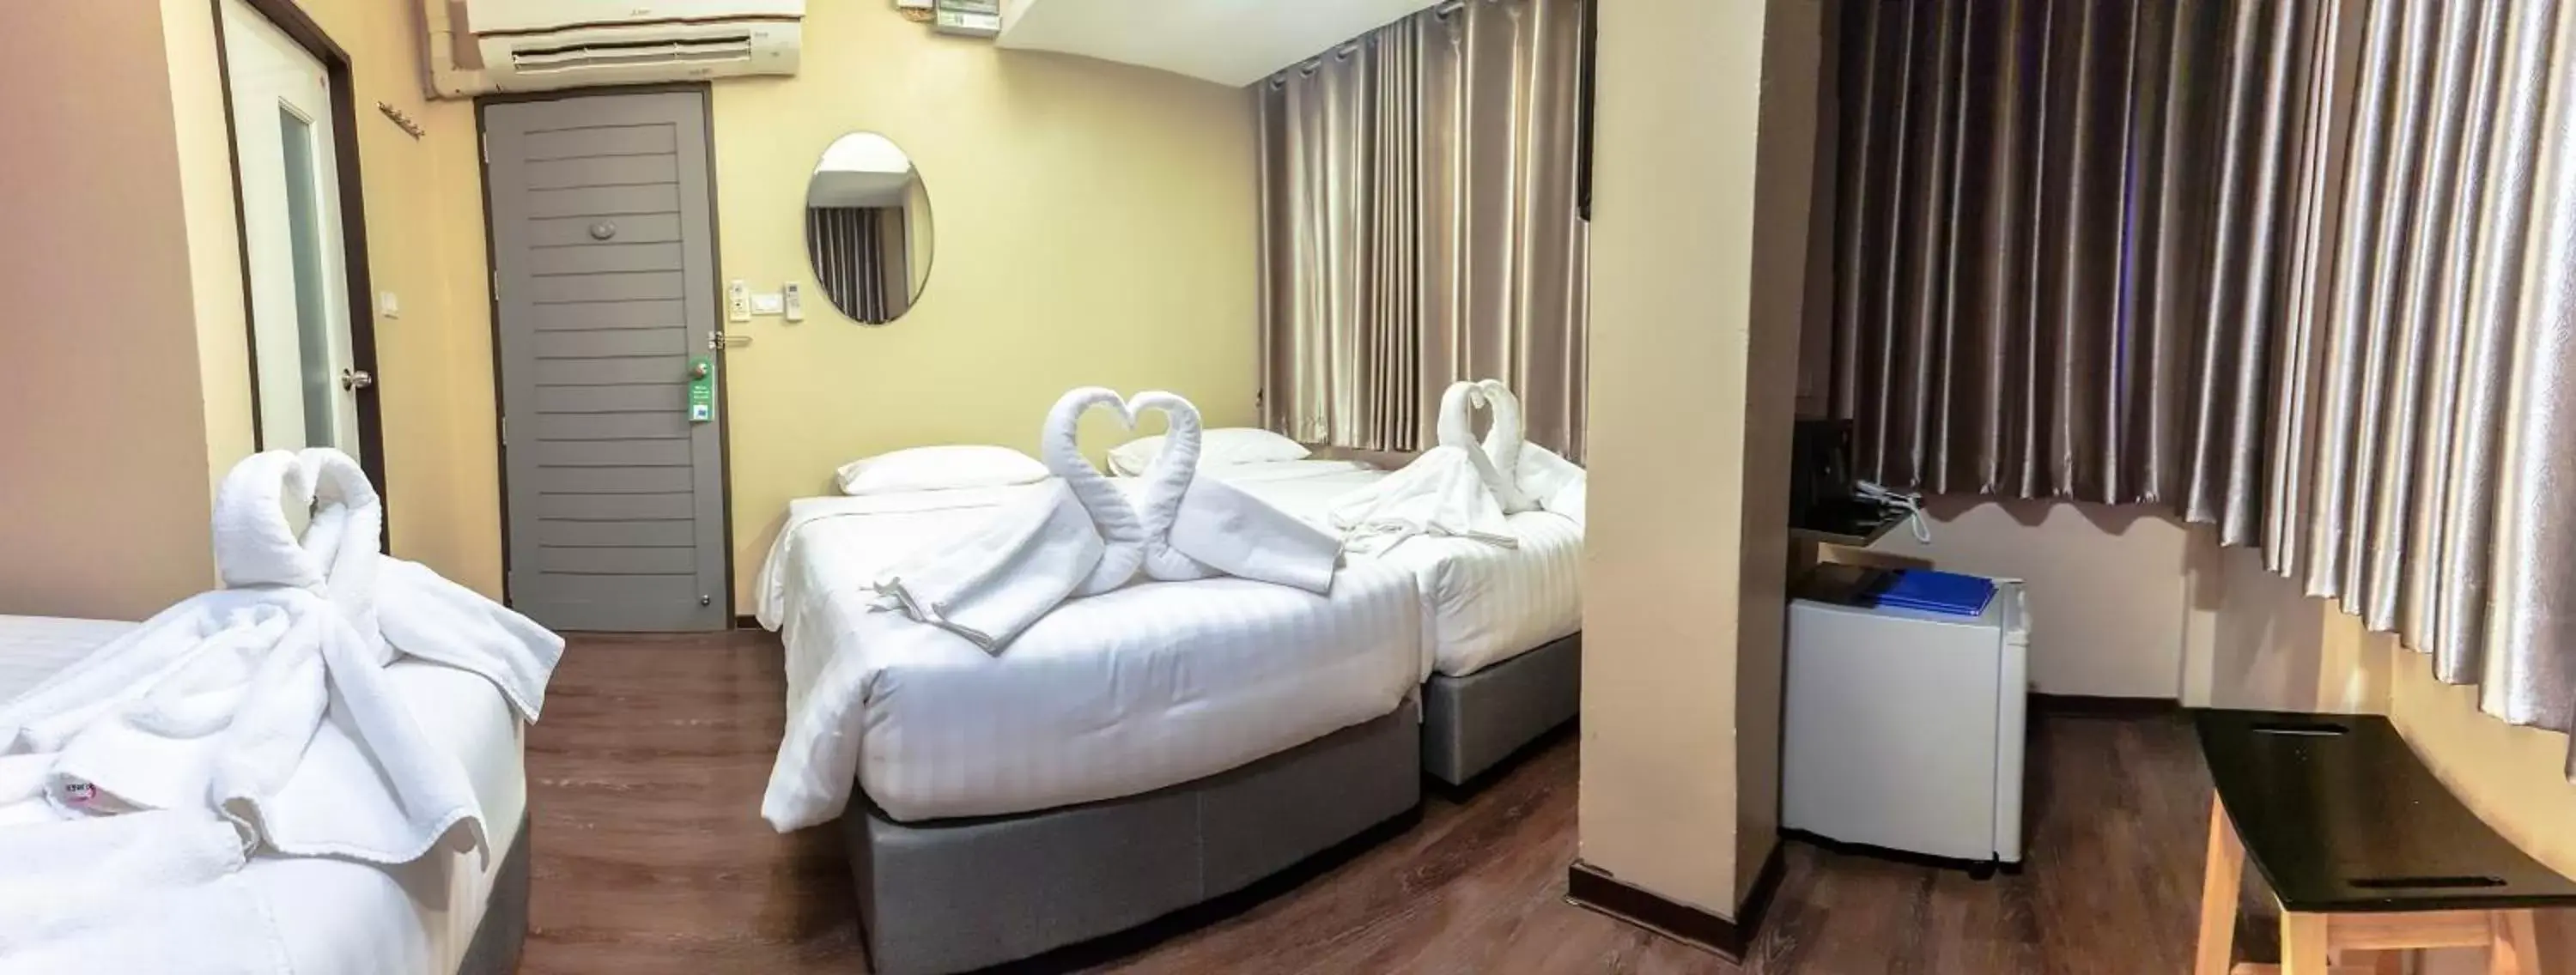 Bedroom, Seating Area in Kim Korner Hotel